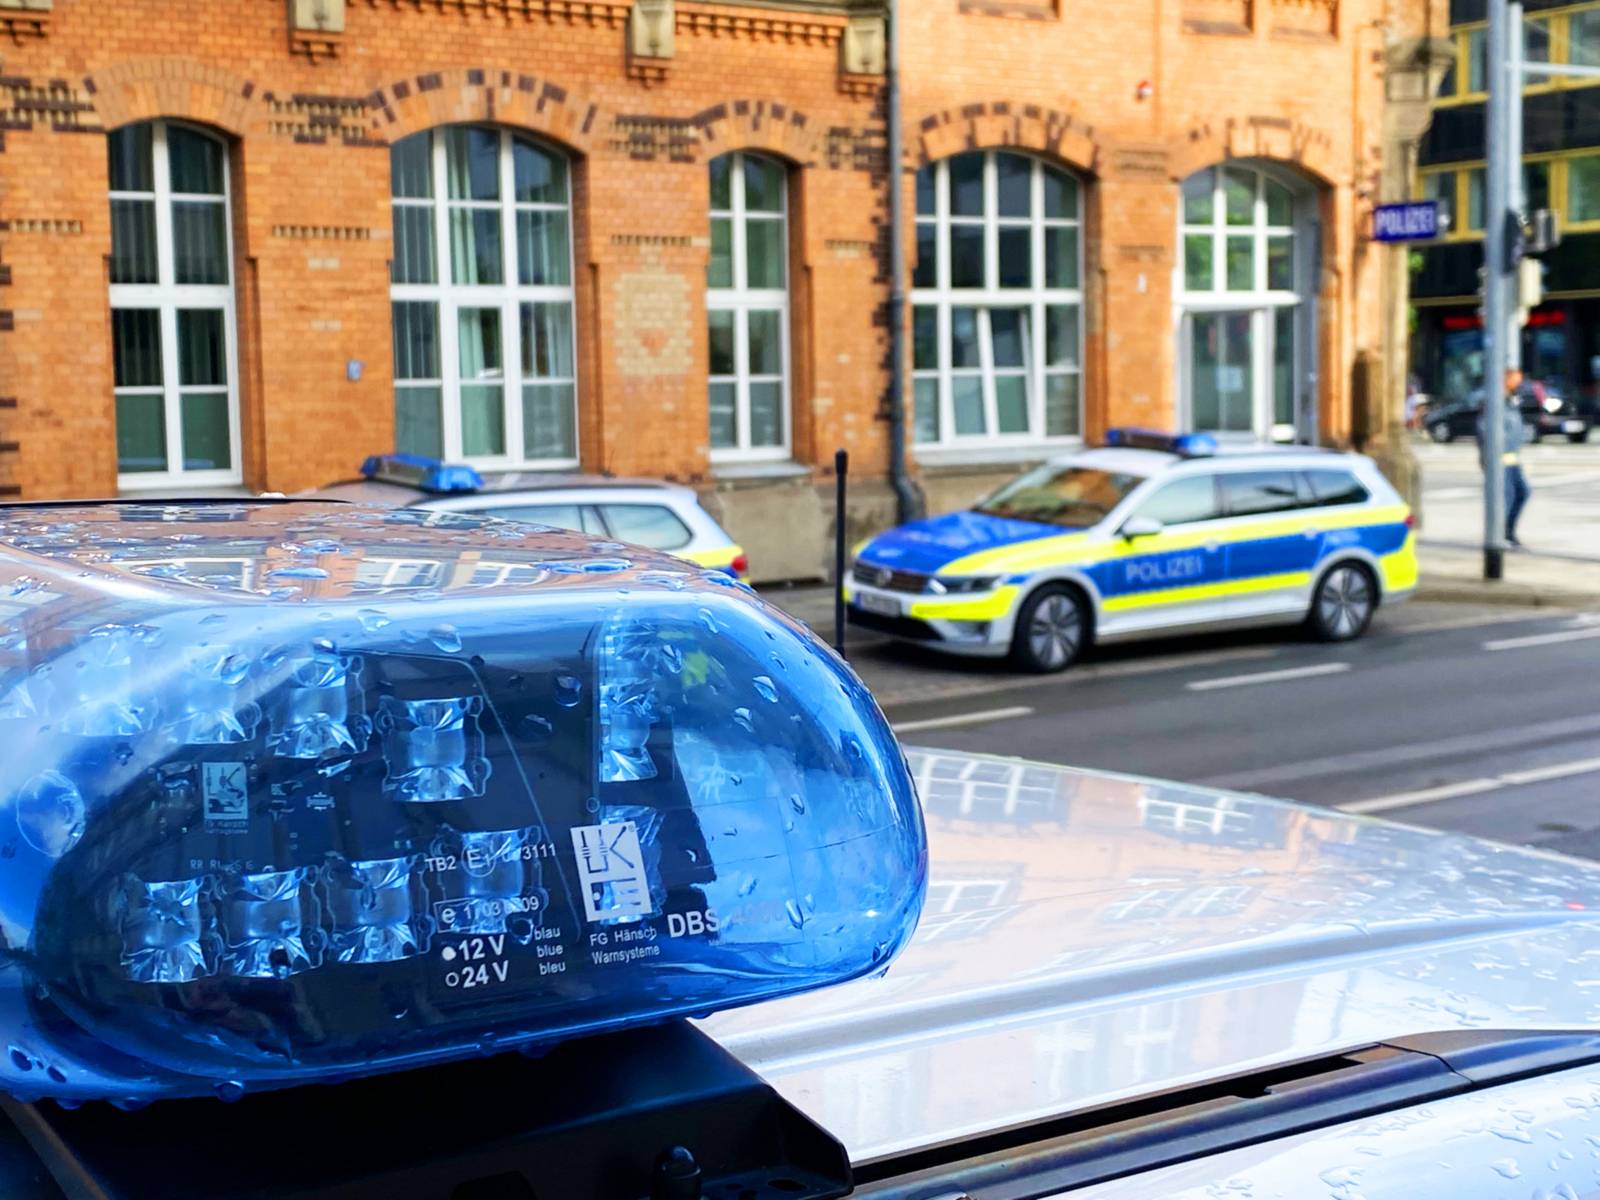 Polizeifahrzeuge stehen vor dem Dienstgebäude in der hannoverschen Herschelstraße, im Vordergrund Blaulicht auf einem Polizeifahrzeug